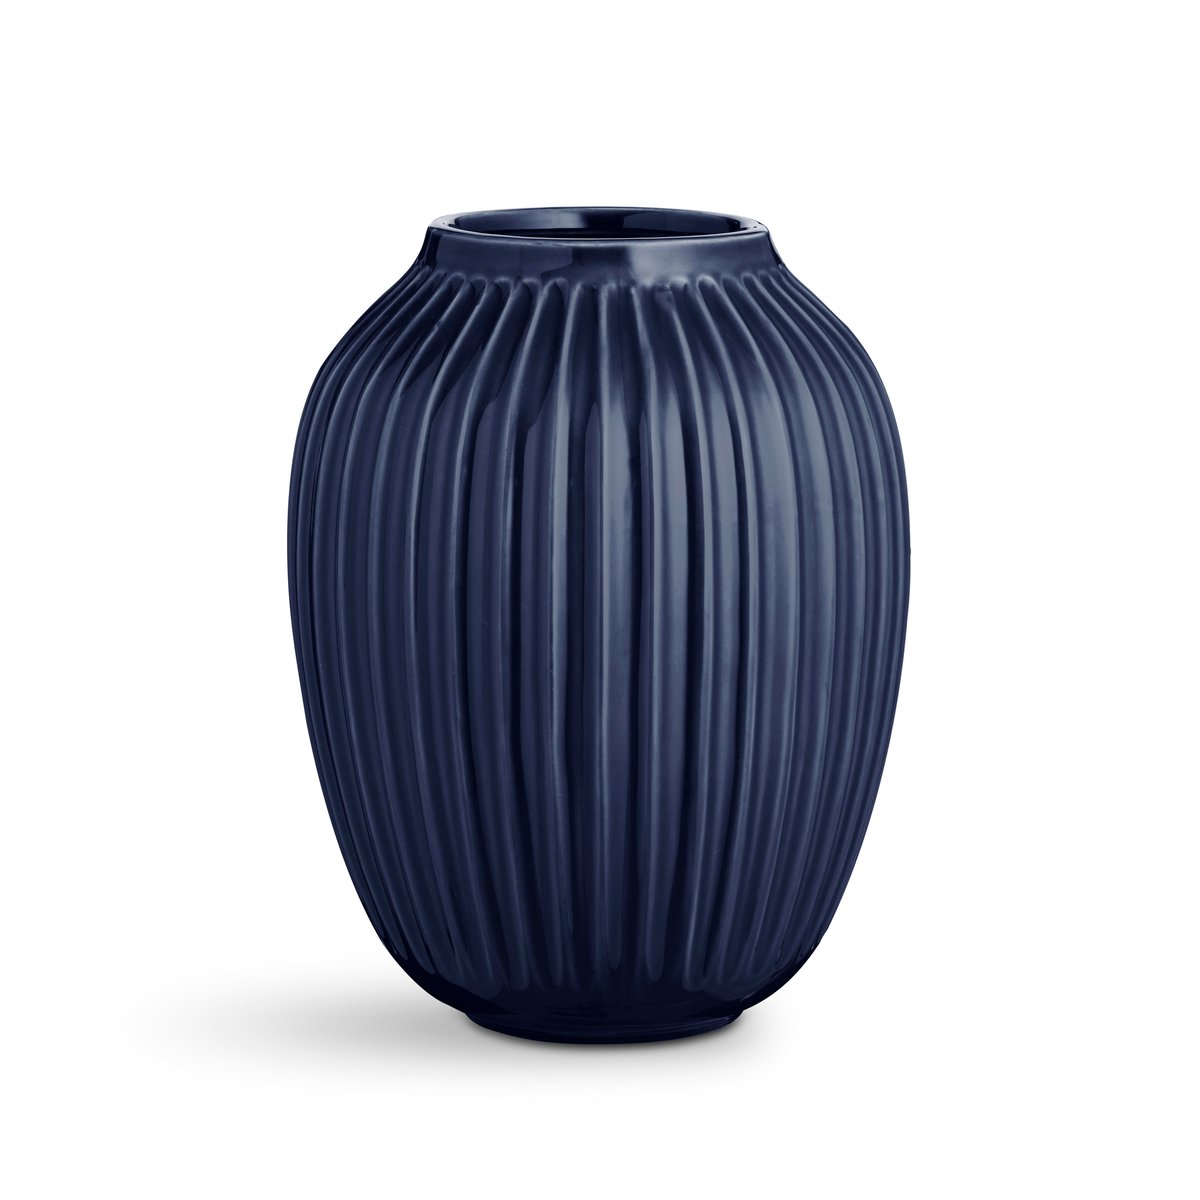 Bilde av Kähler Hammershøi vase stor indigo